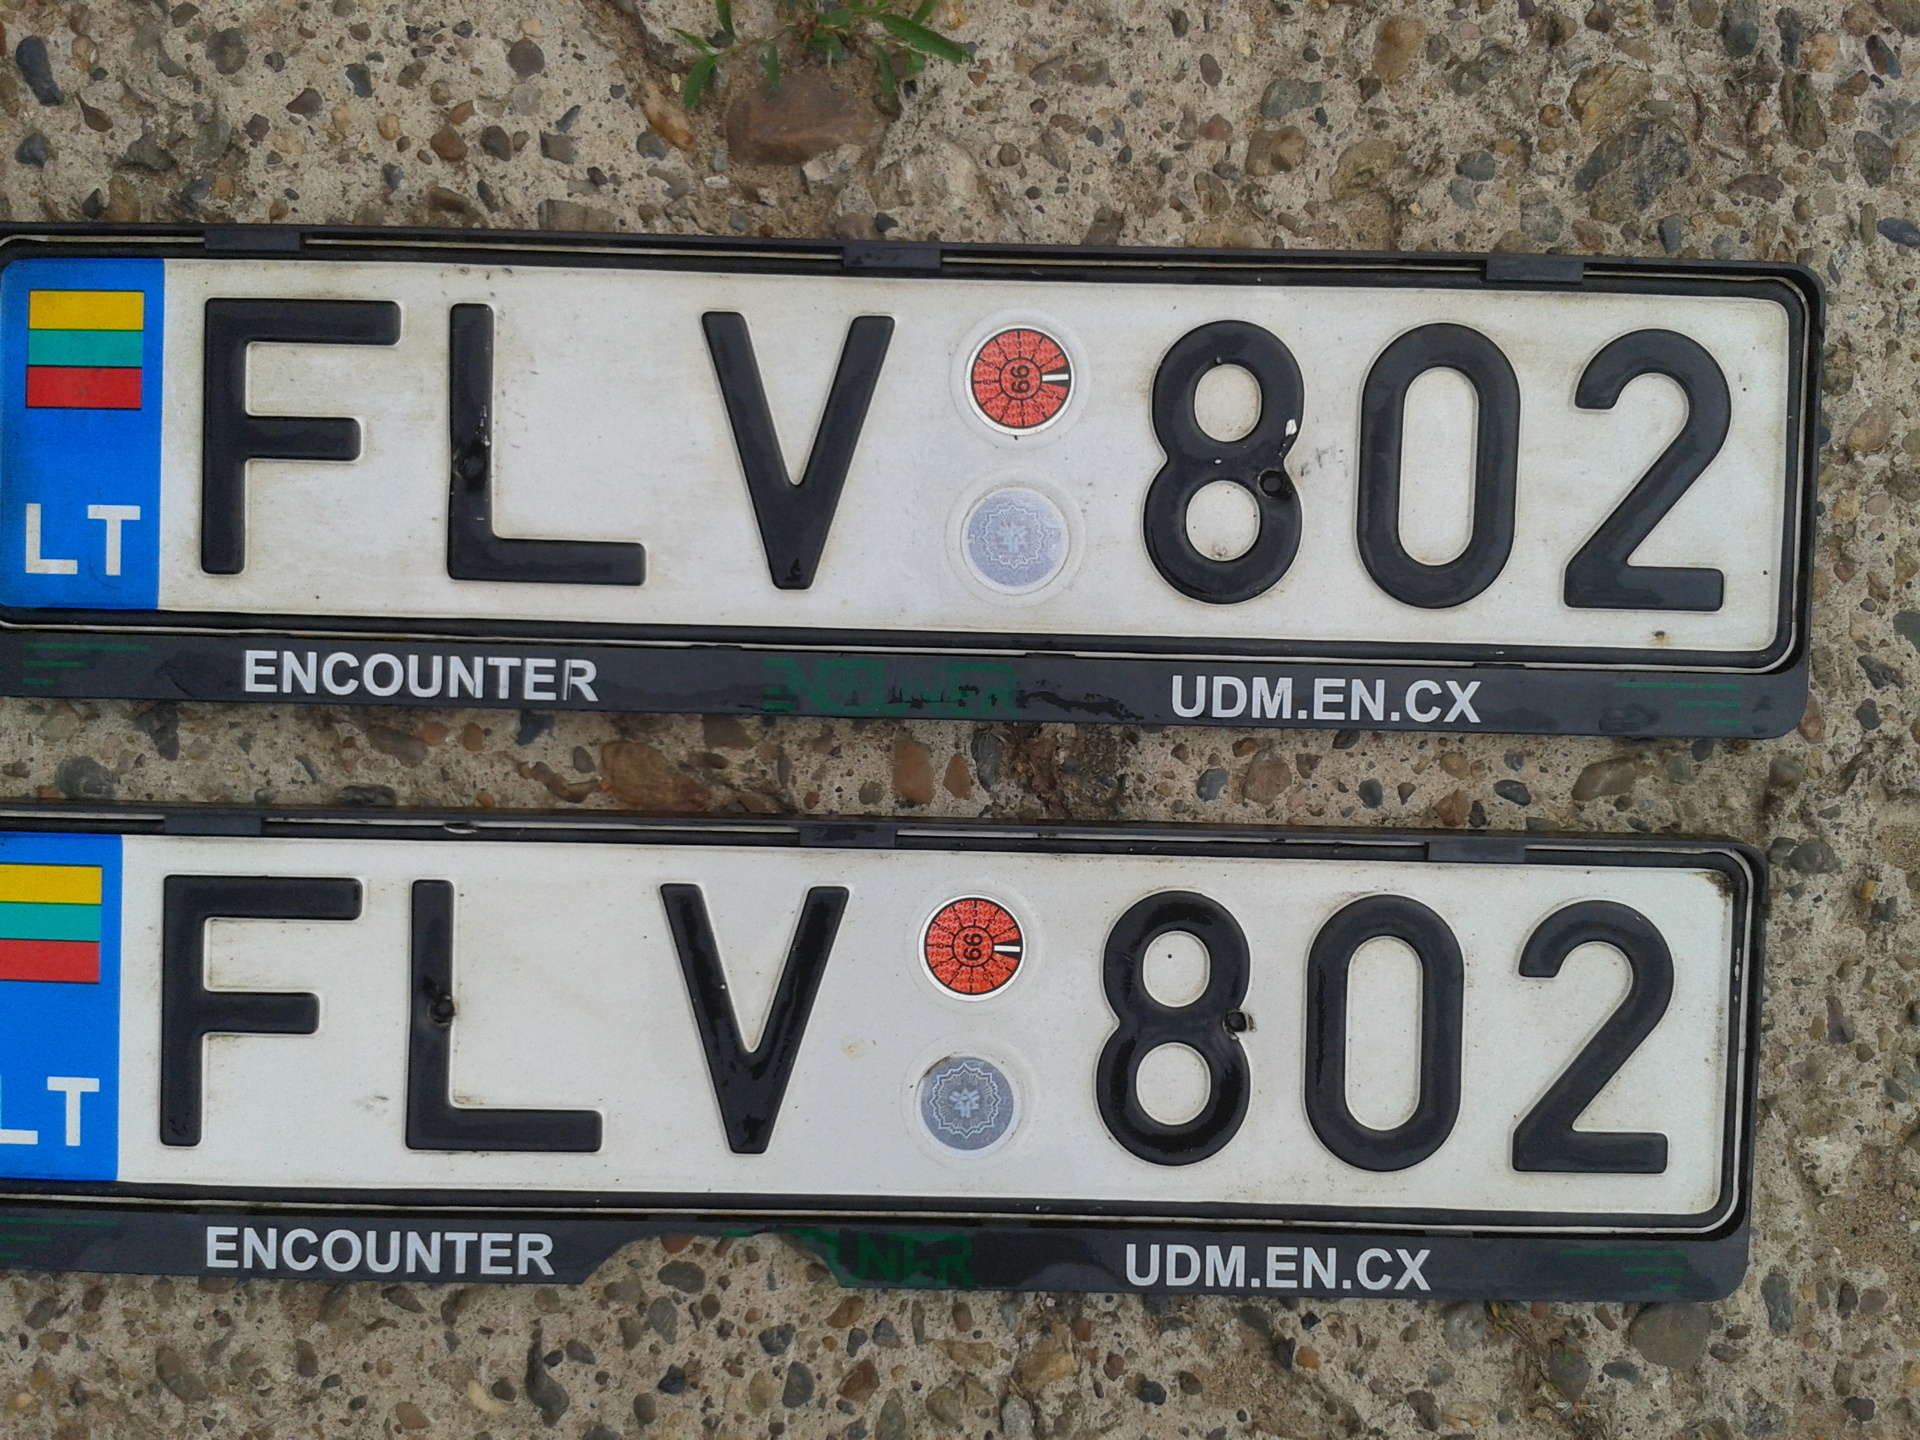 Литва номера автомобилей. Автомобильные номера Литвы. Литовские номерные знаки. Литовские автомобильные номера. Литовские гос номера.